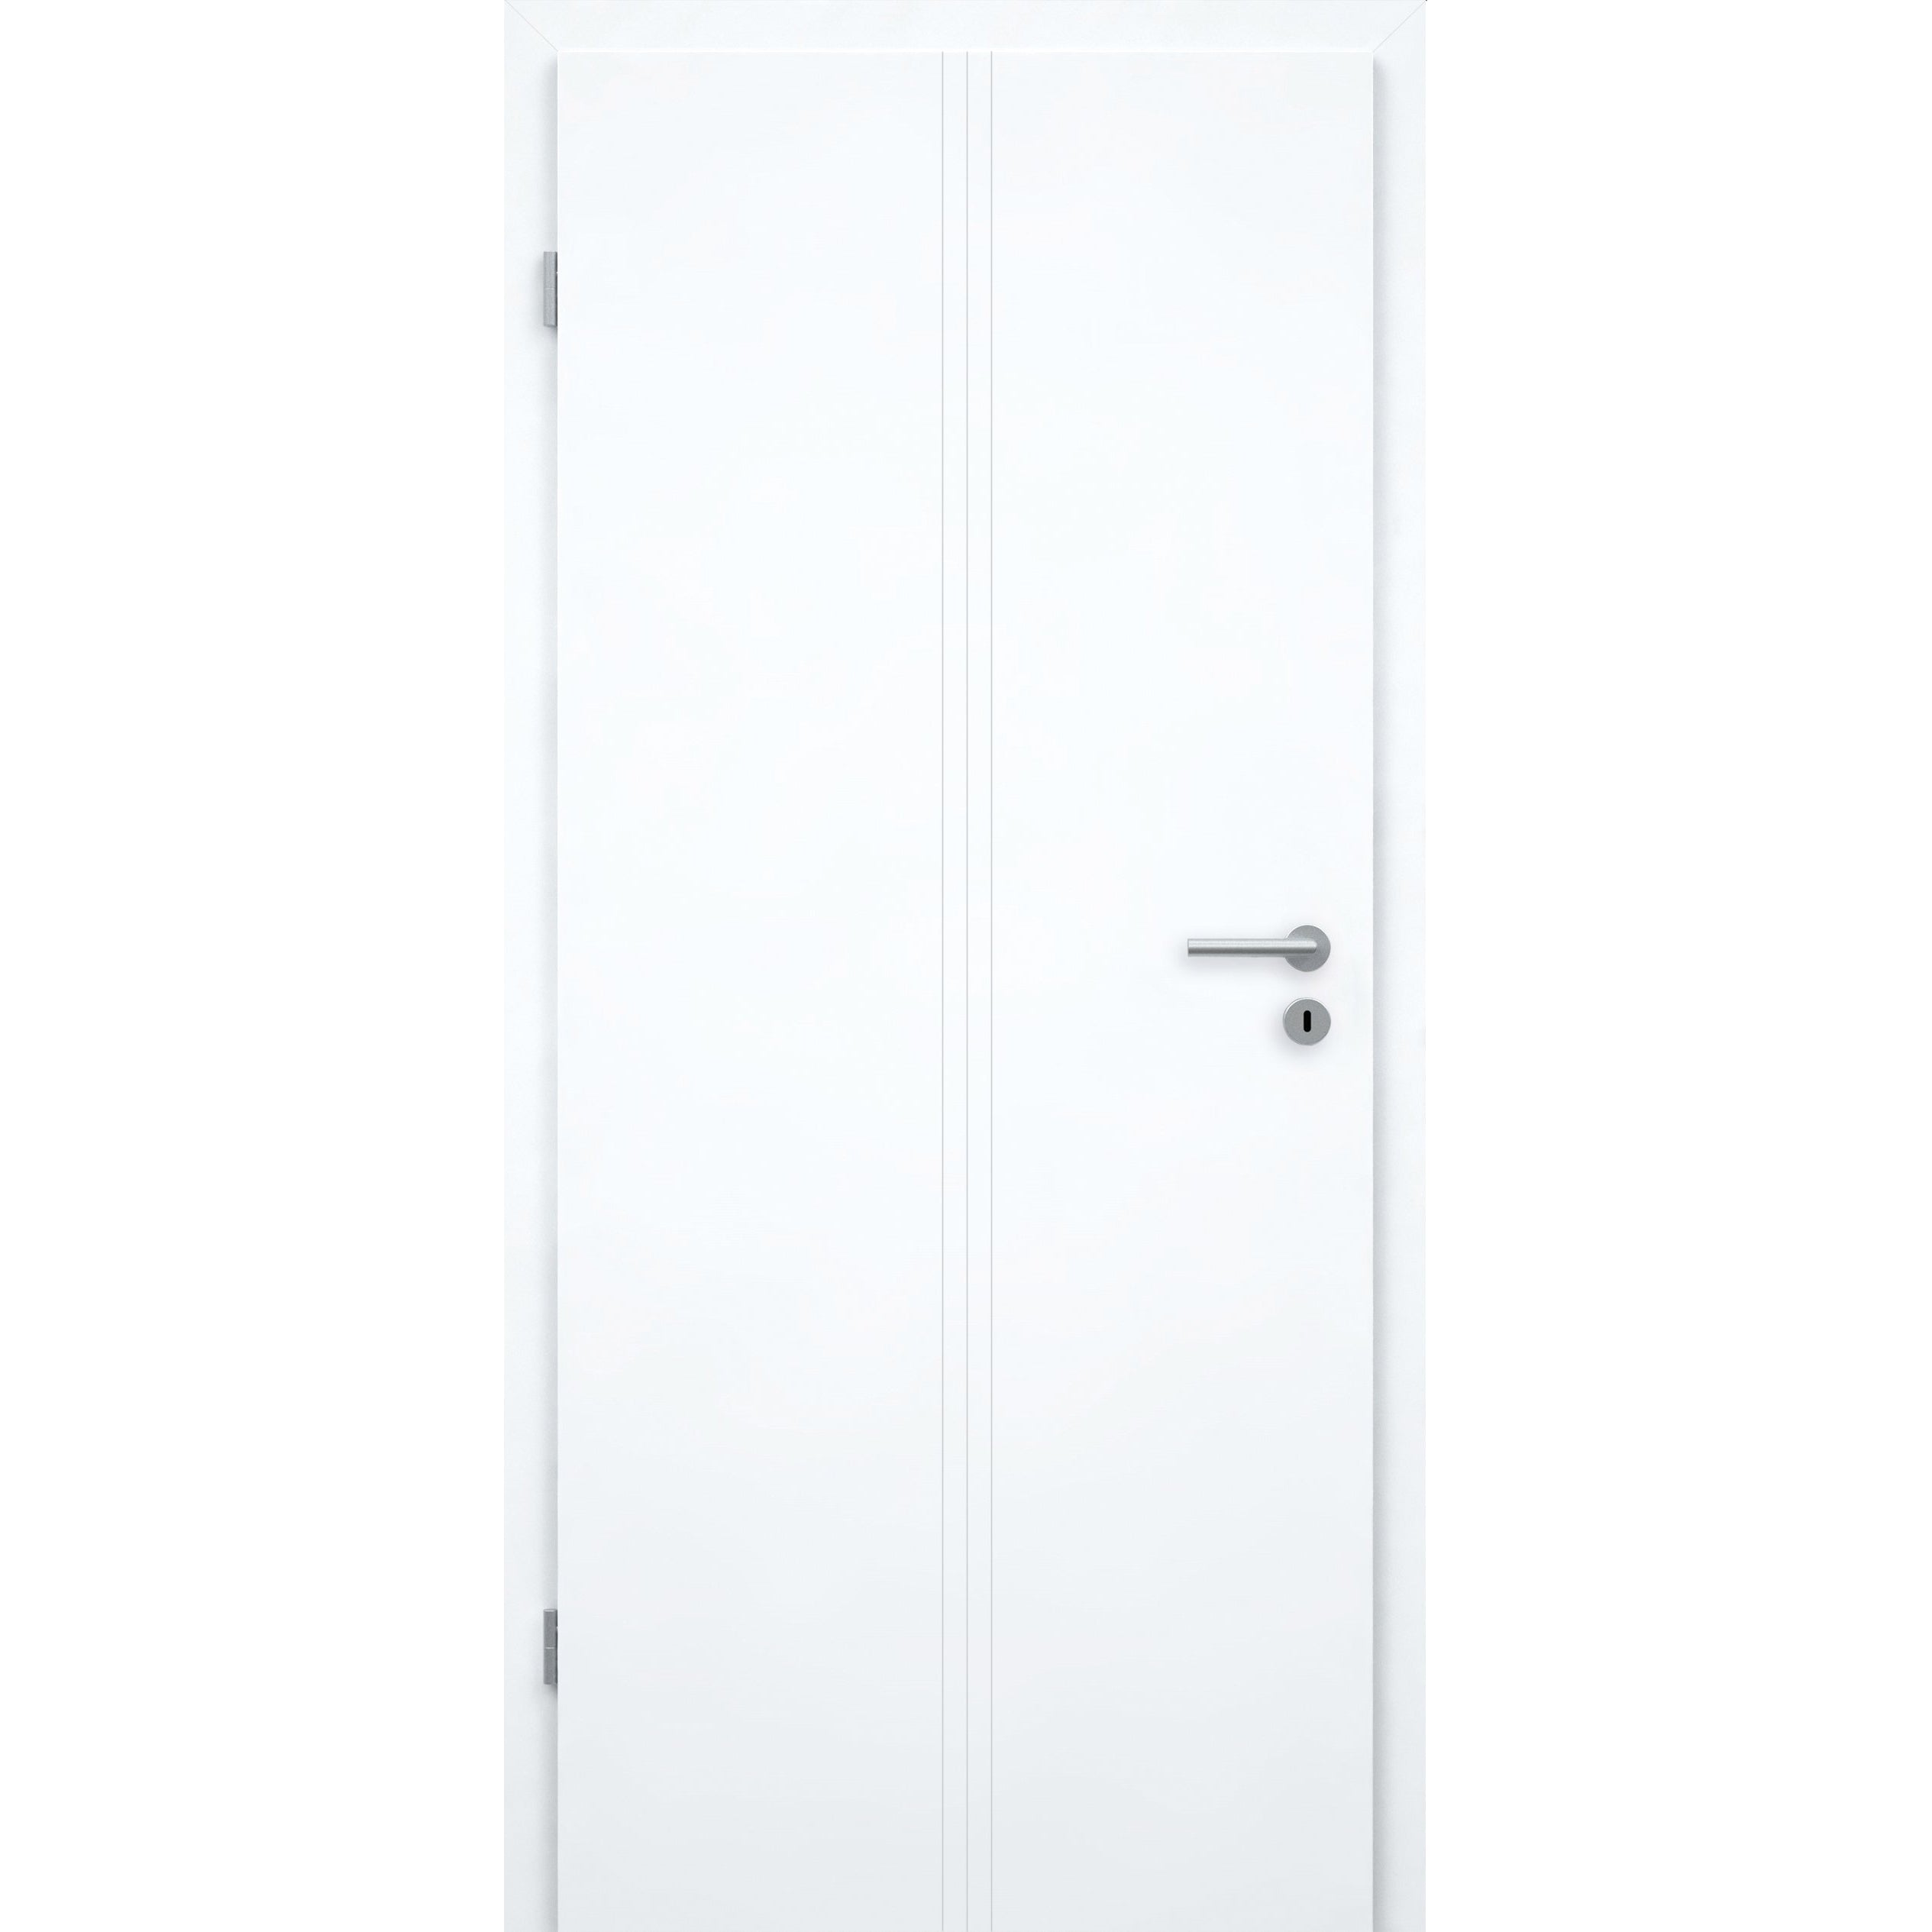 Wohnungseingangstür mit Zarge brillant-weiß 3 Rillen aufrecht Designkante SK1 / KK3 - Modell Designtür VM33